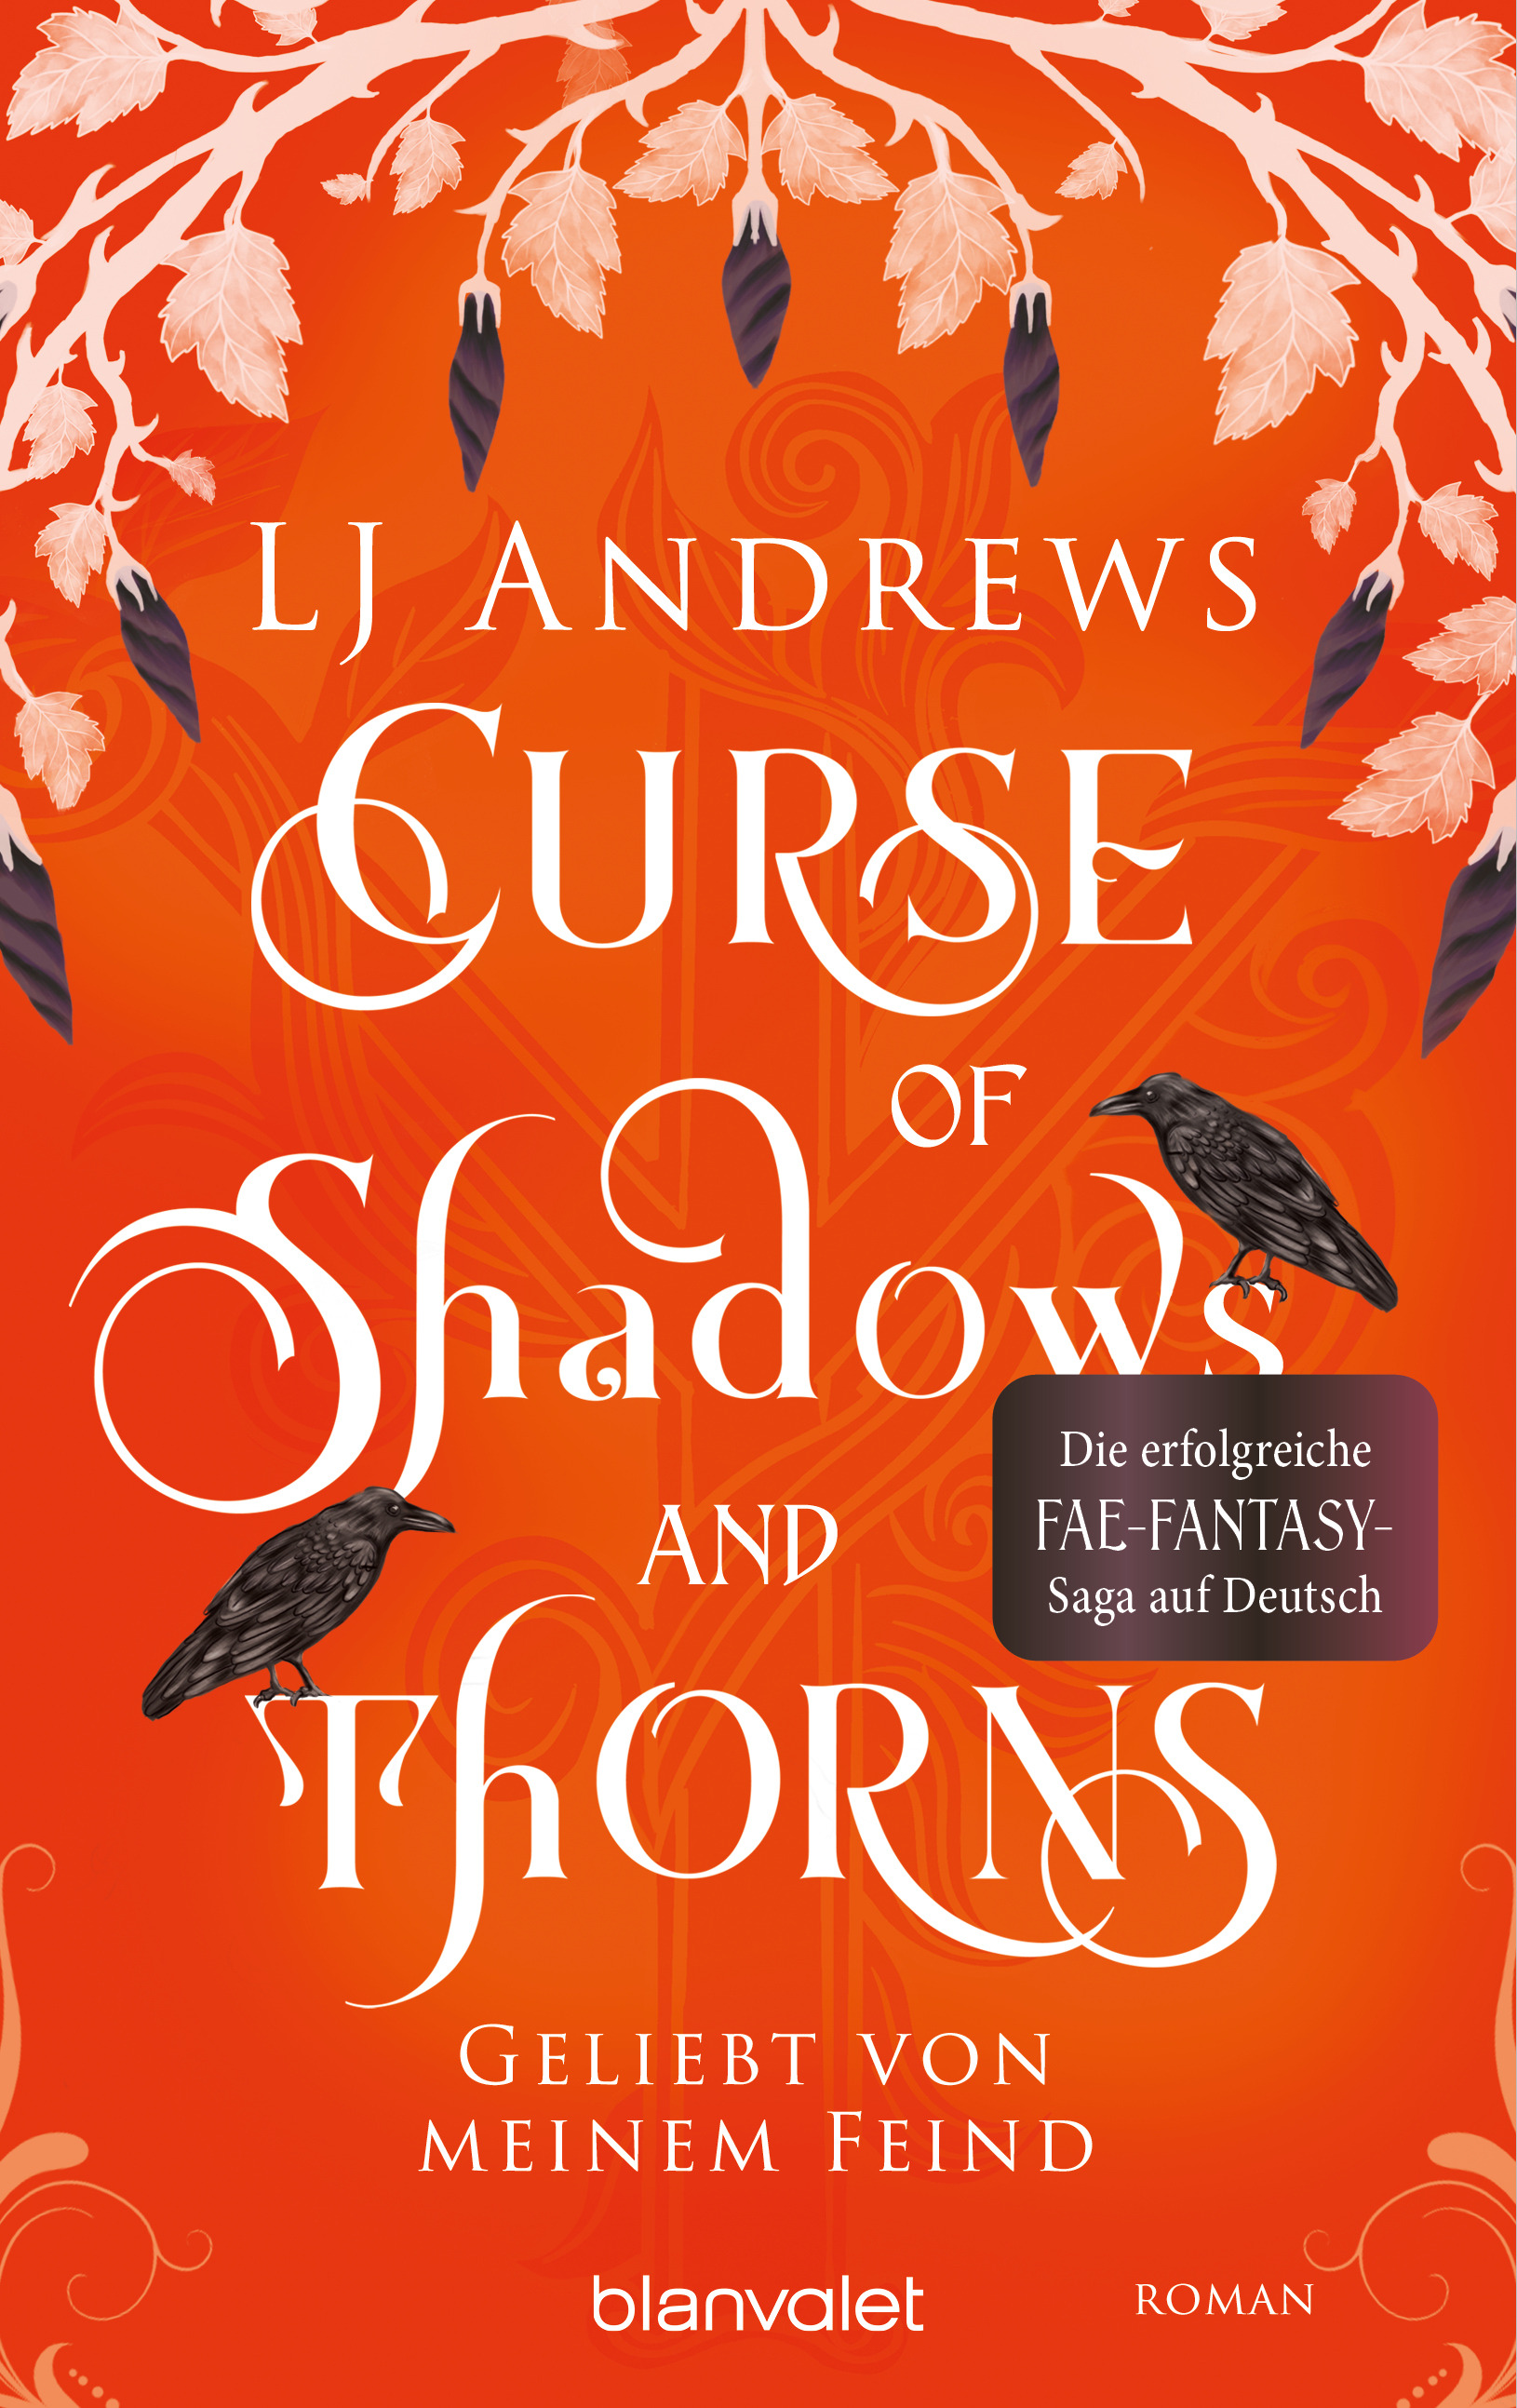 Bücherblog. Neuerscheinungen. Buchcover. Curse of Shadows and Thorns - Geliebt von meinem Feind (Band 1) von LJ Andrews. Fantasy. blanvalet.